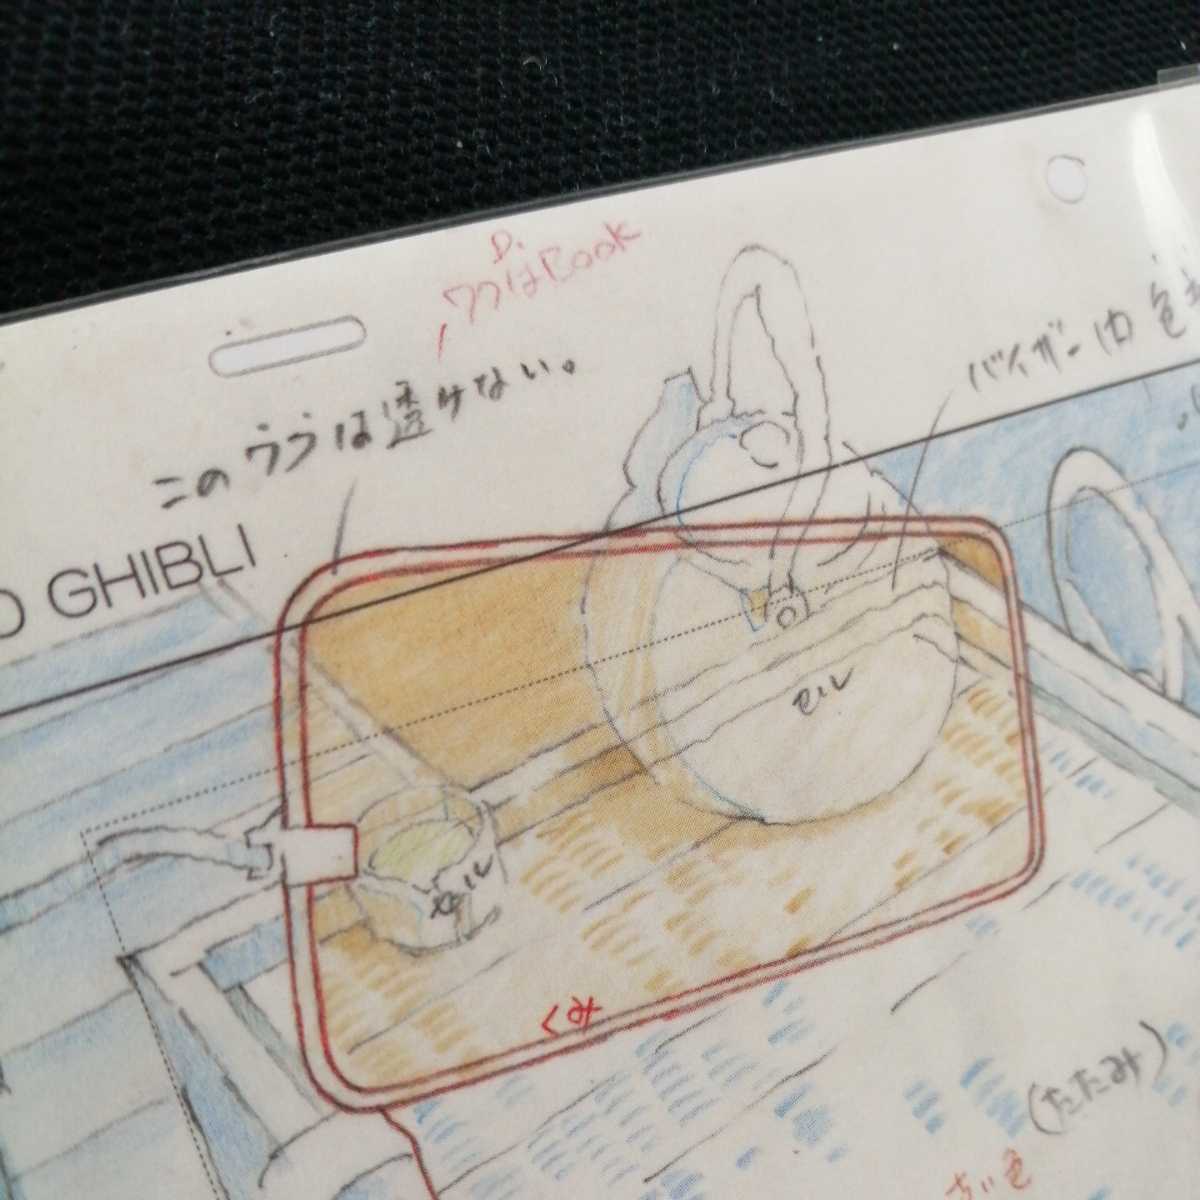  Studio Ghibli тысяч . тысяч .. бог .. расположение порез . осмотр ) Ghibli открытка постер исходная картина цифровая картинка расположение выставка Miyazaki .b